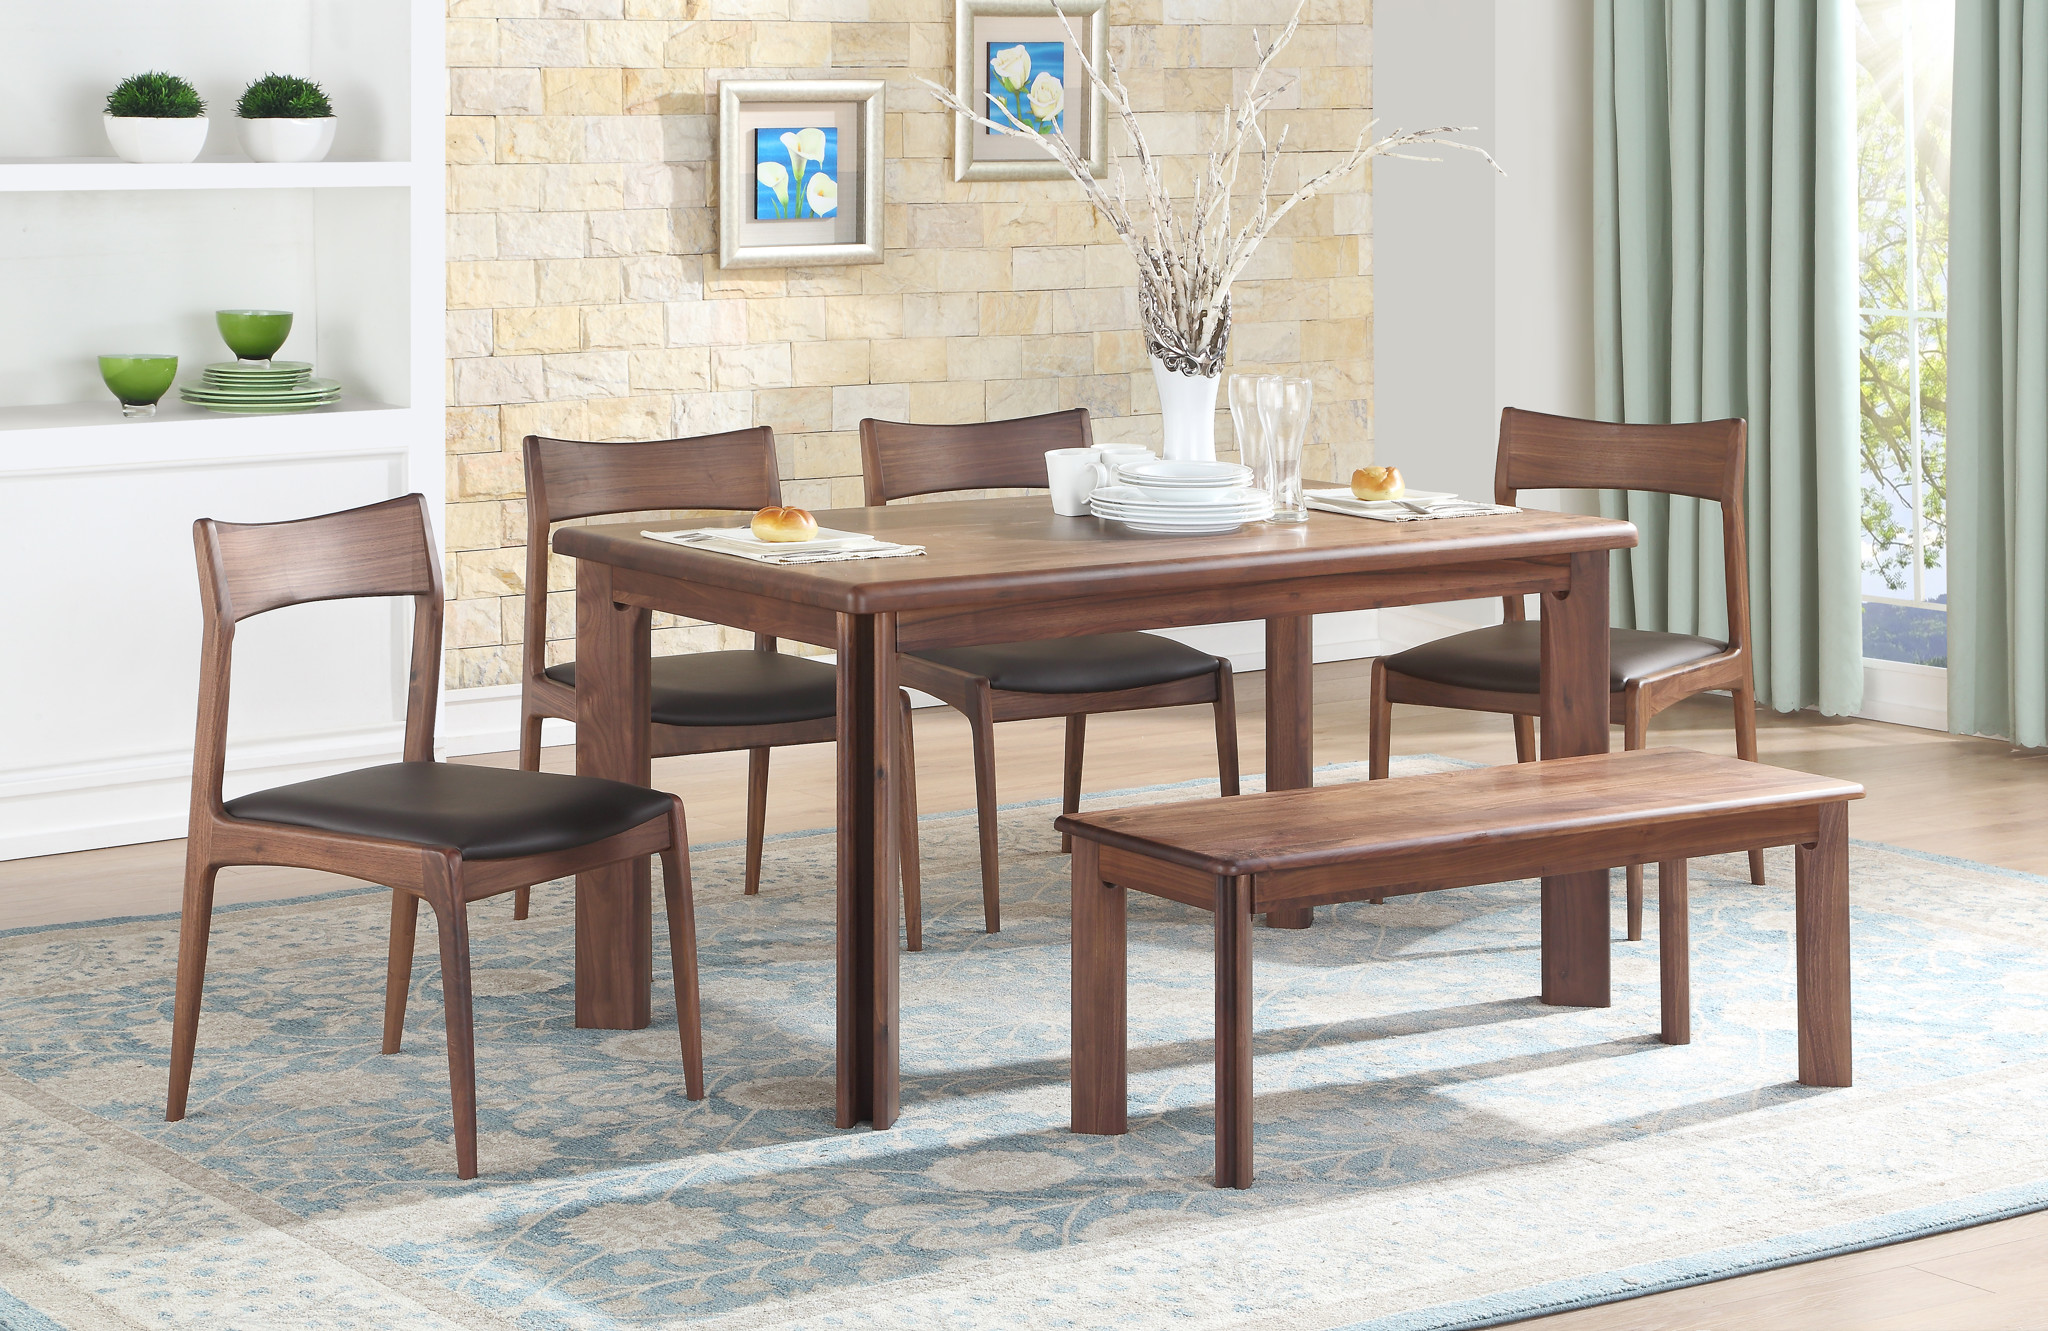 Bộ bàn ghế ăn gỗ - Lựa chọn hoàn hảo cho không gian phòng ăn